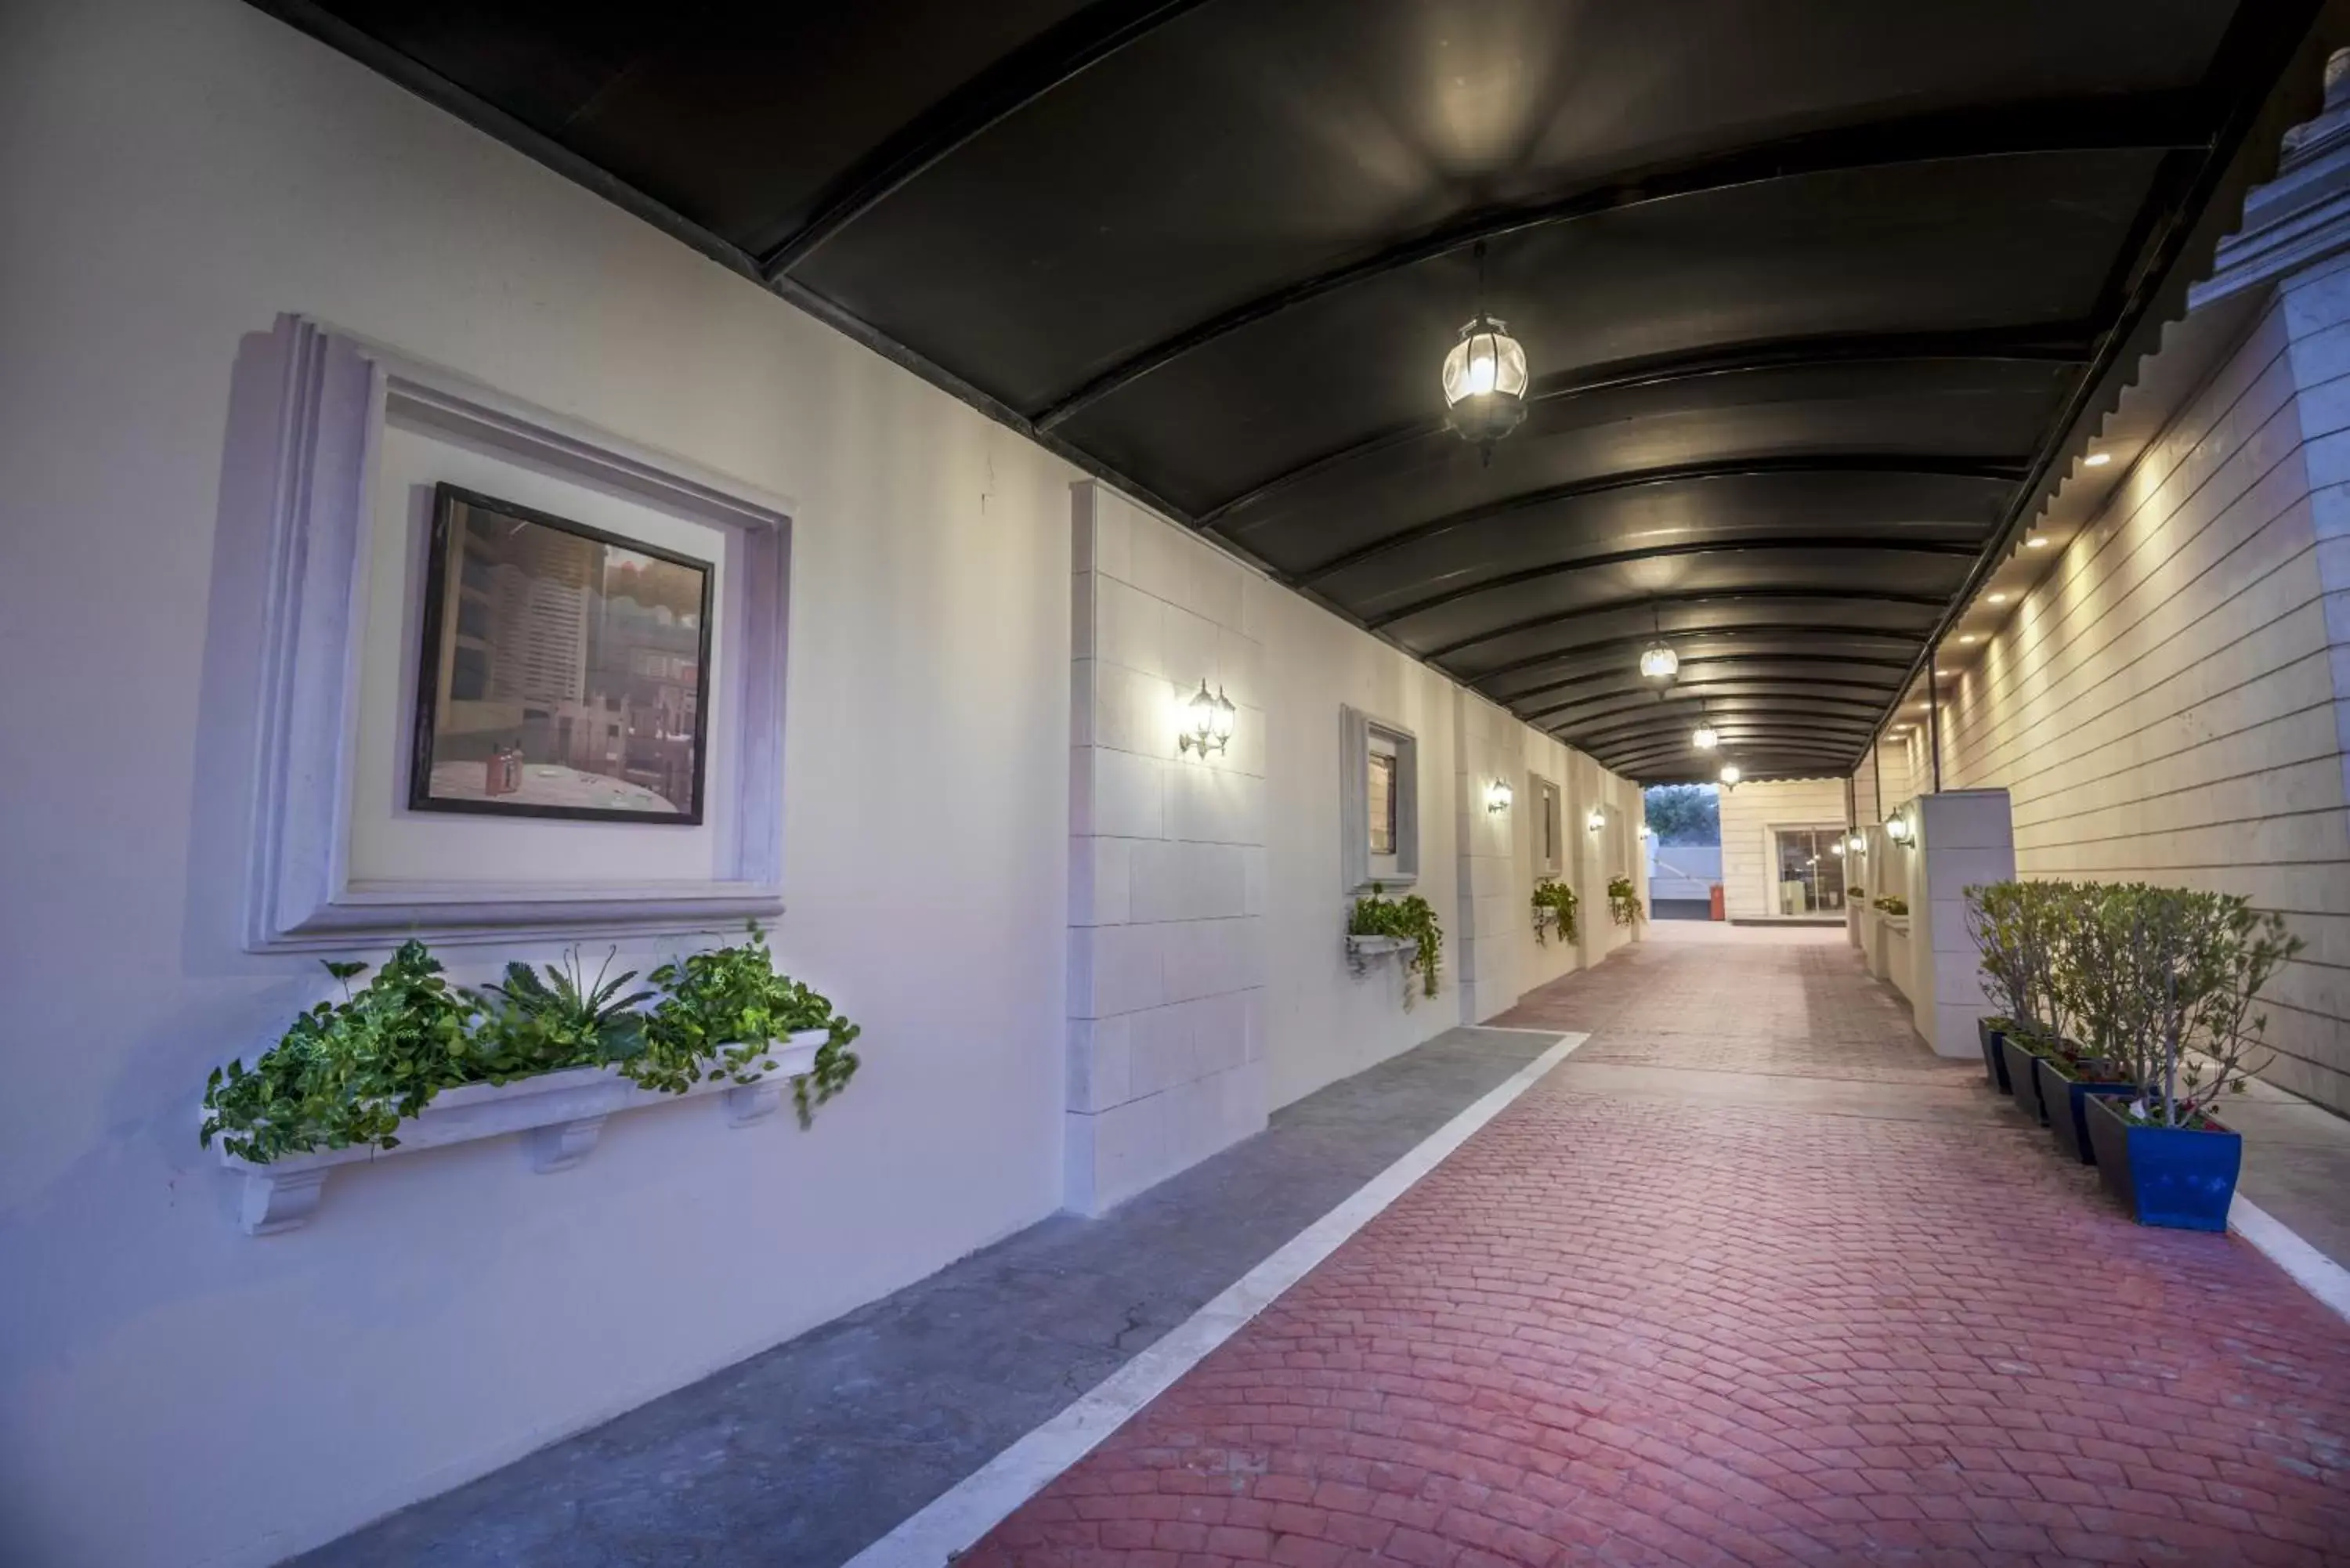 Lobby or reception in Mira Trio Hotel - Riyadh - Tahlia Street